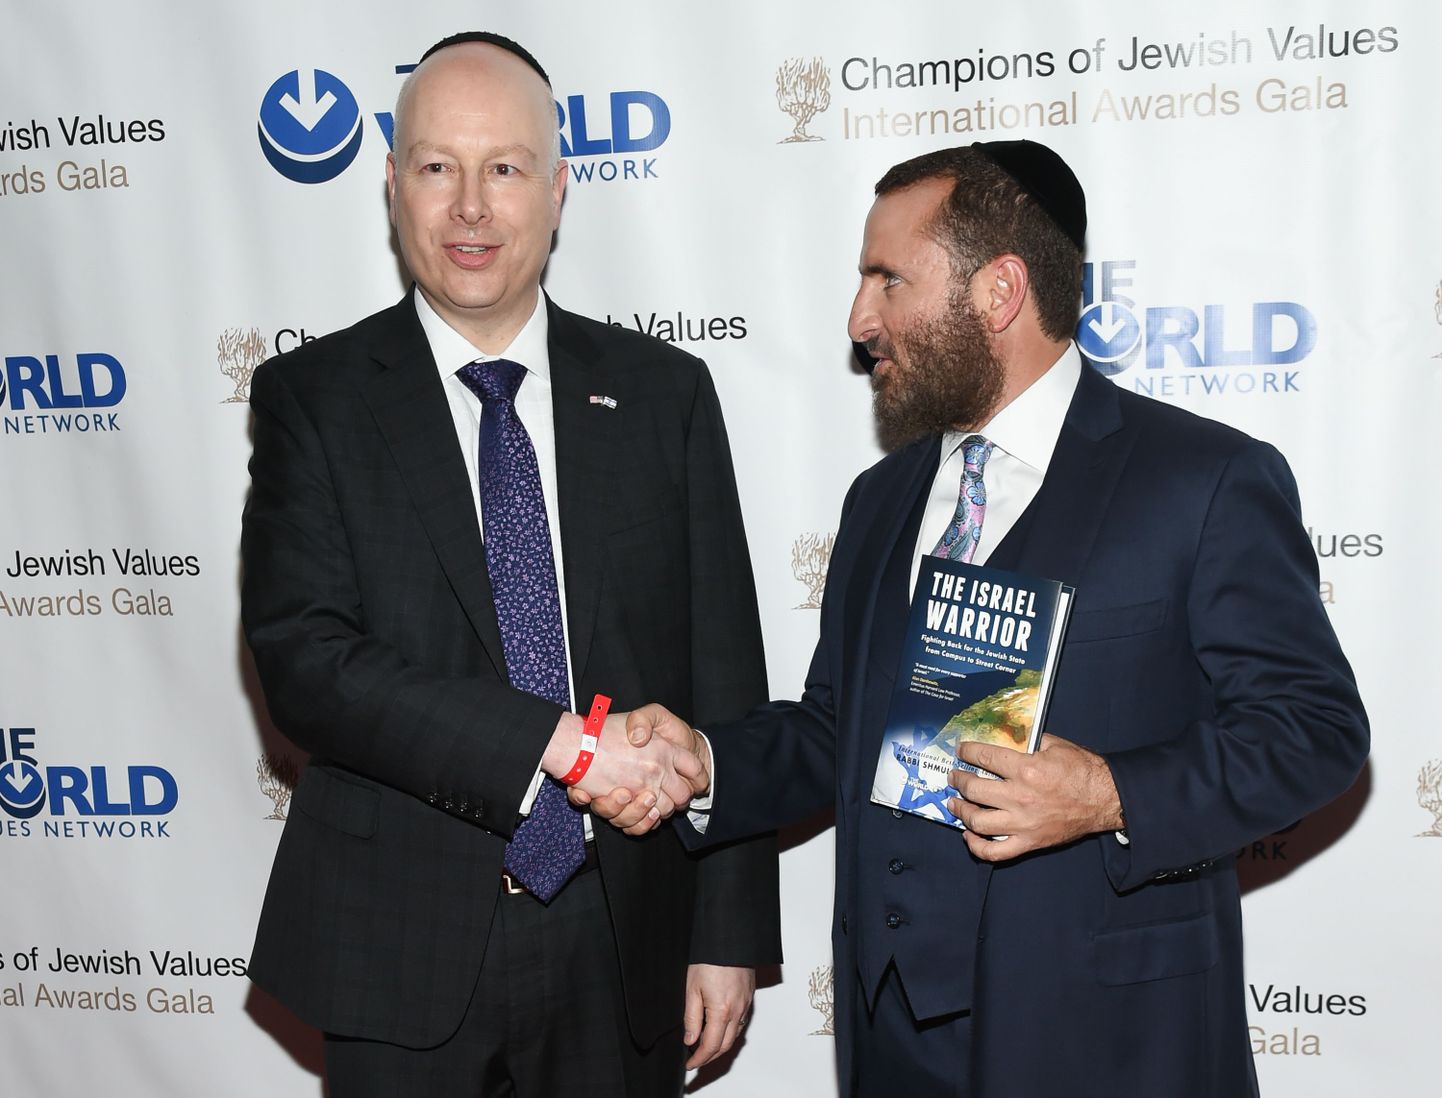 Jason Greenblatt (vasakul) koos rabi Shmuley Boteachiga juudi väärtustele pühendunud rahvusvahelisel auhinnagalal New Yorgis.